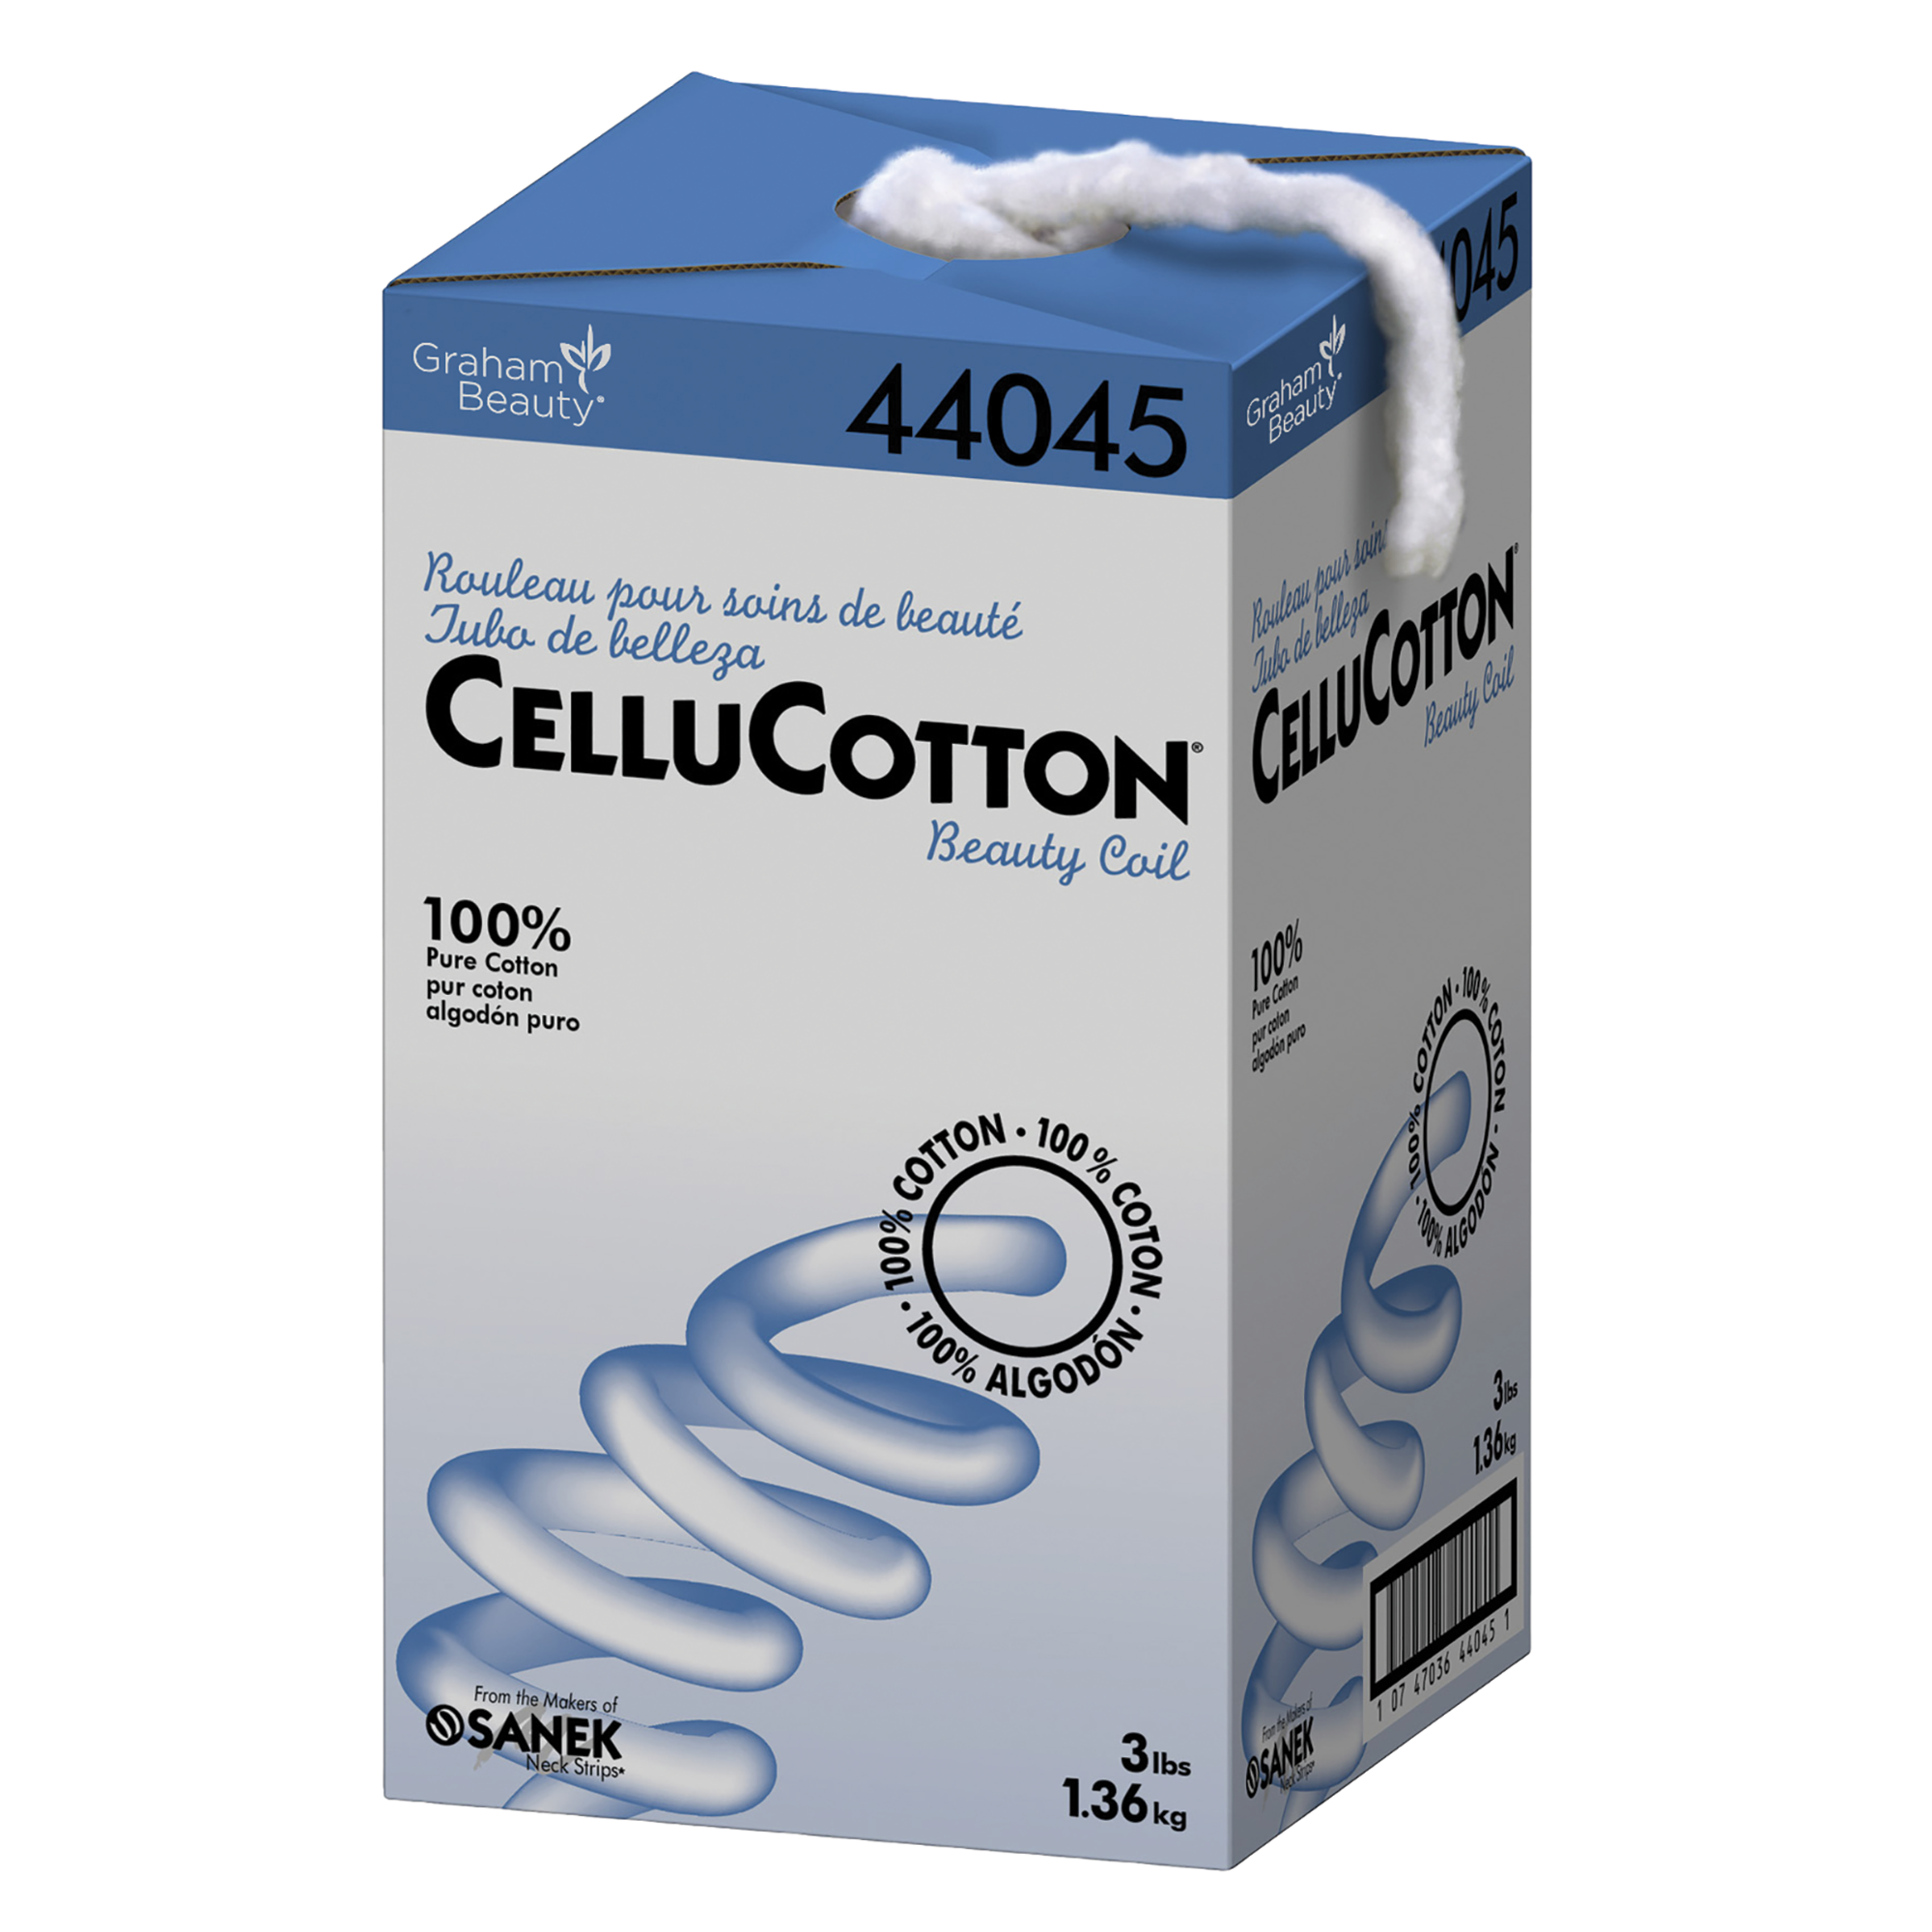 CelluCotton® Beauty Coil Cotton, 3 lbs.